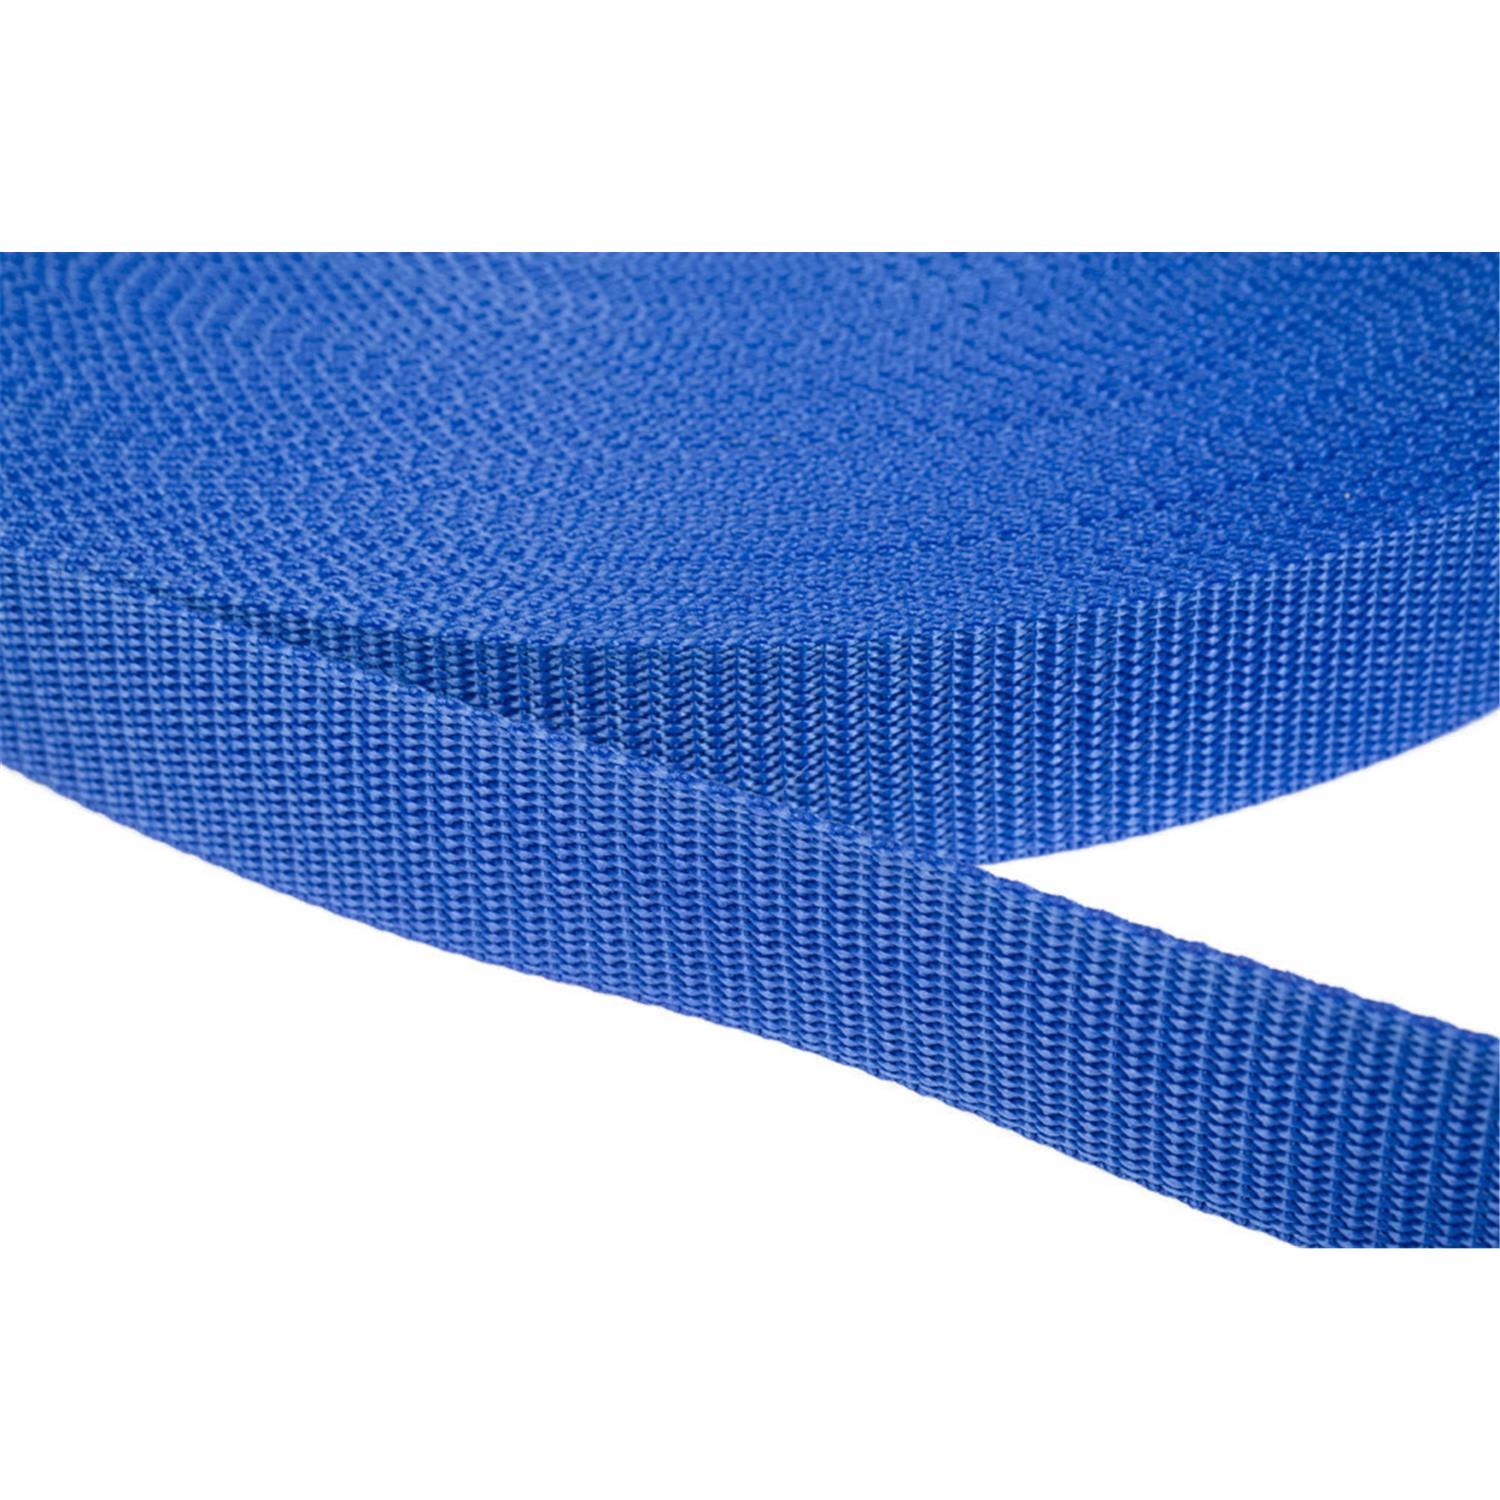 Gurtband 30mm breit aus Polypropylen in 41 Farben 26 - royalblau 6 Meter